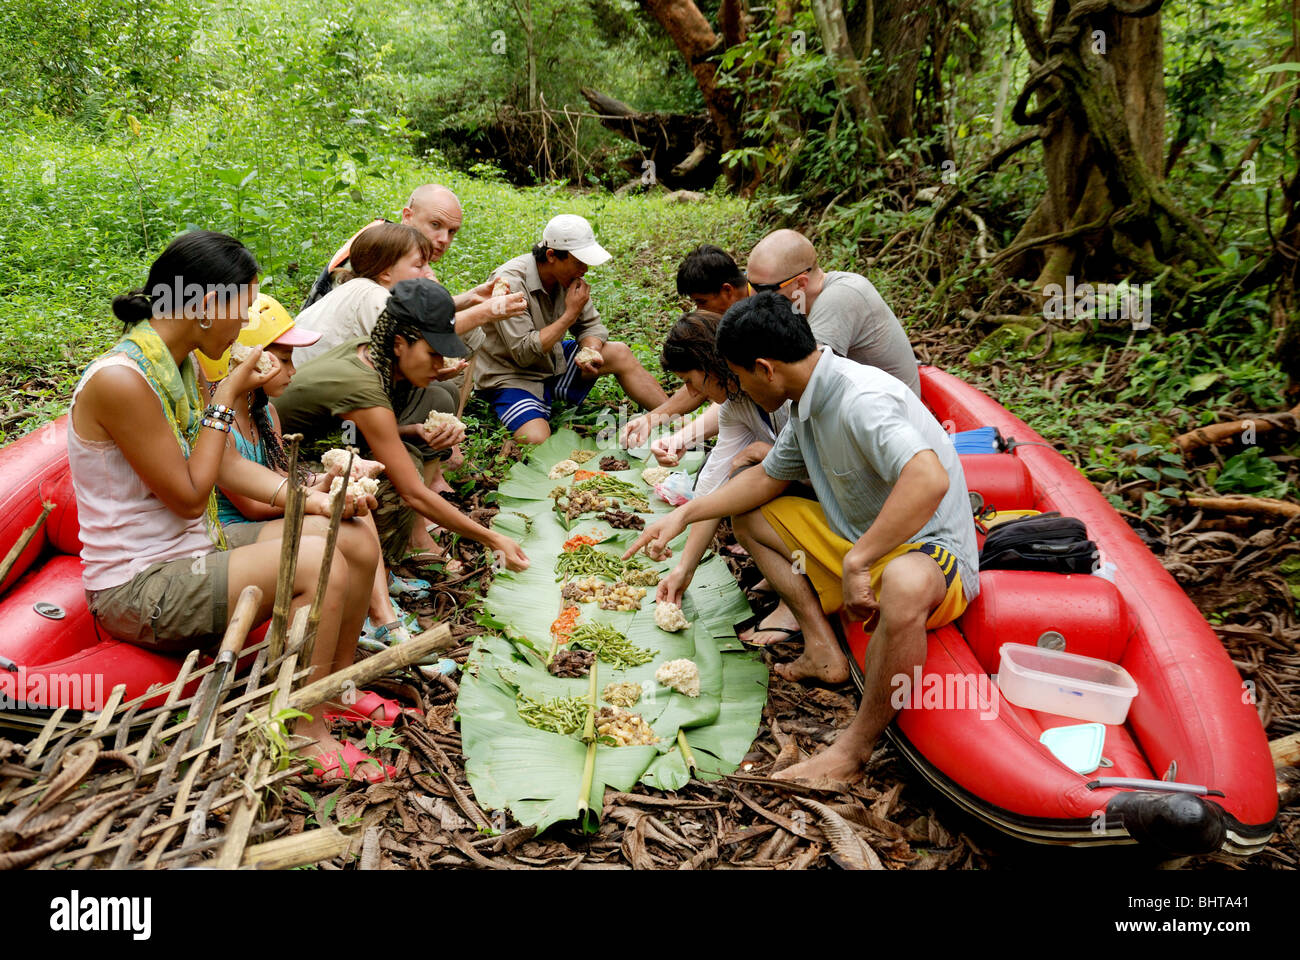 Après avoir déjeuner sur une feuille de bananier au cours d'une excursion en kayak dans la jungle dans le nord de la province de Luang Namtha au Laos. Banque D'Images